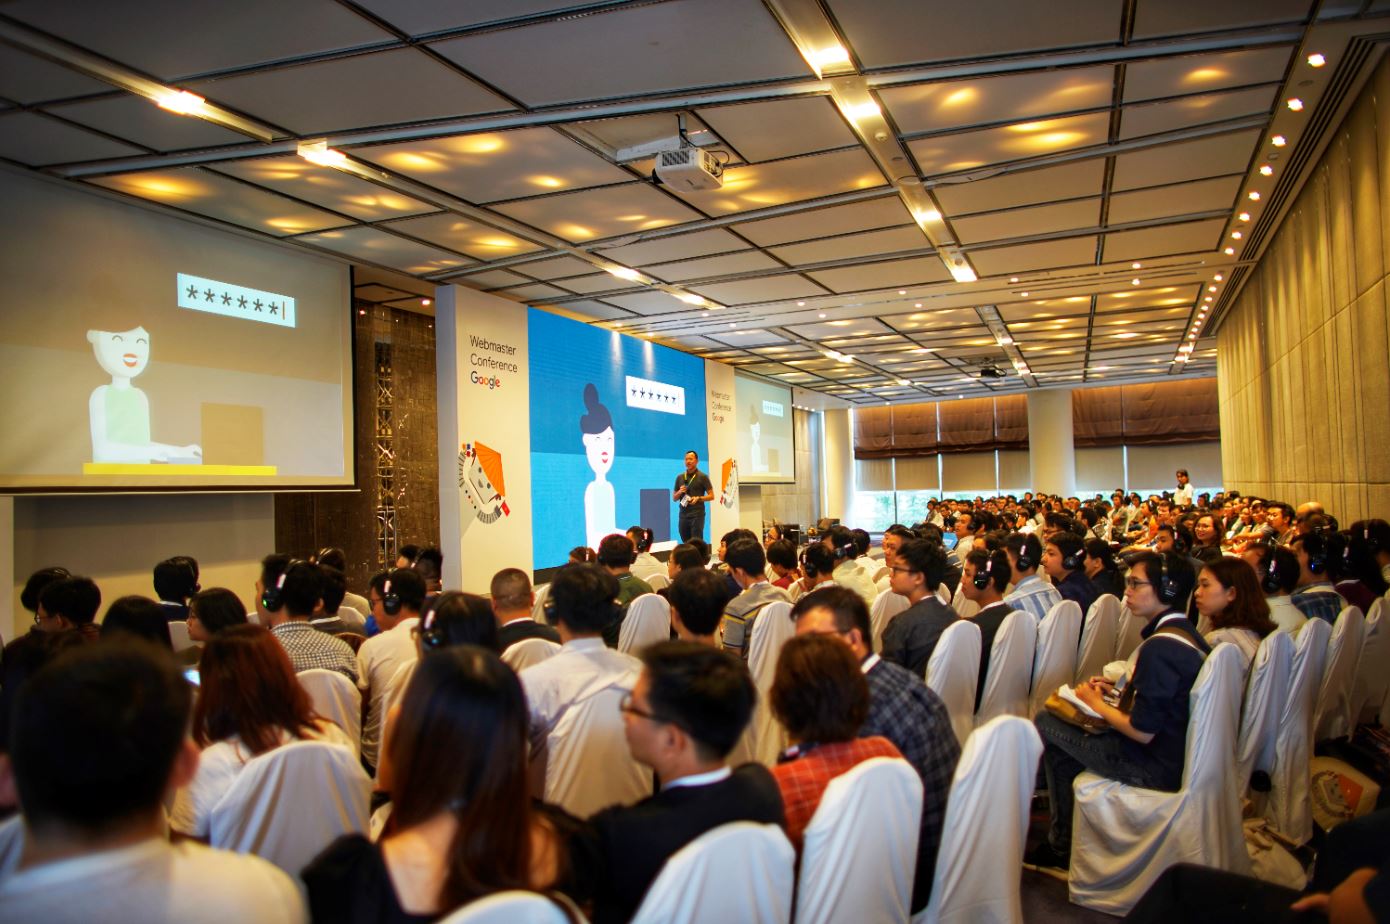 Webmaster Conference – Hội thảo miễn phí hướng dẫn tối ưu hiệu suất website lần đầu tiên được Google tổ chức tại Việt Nam